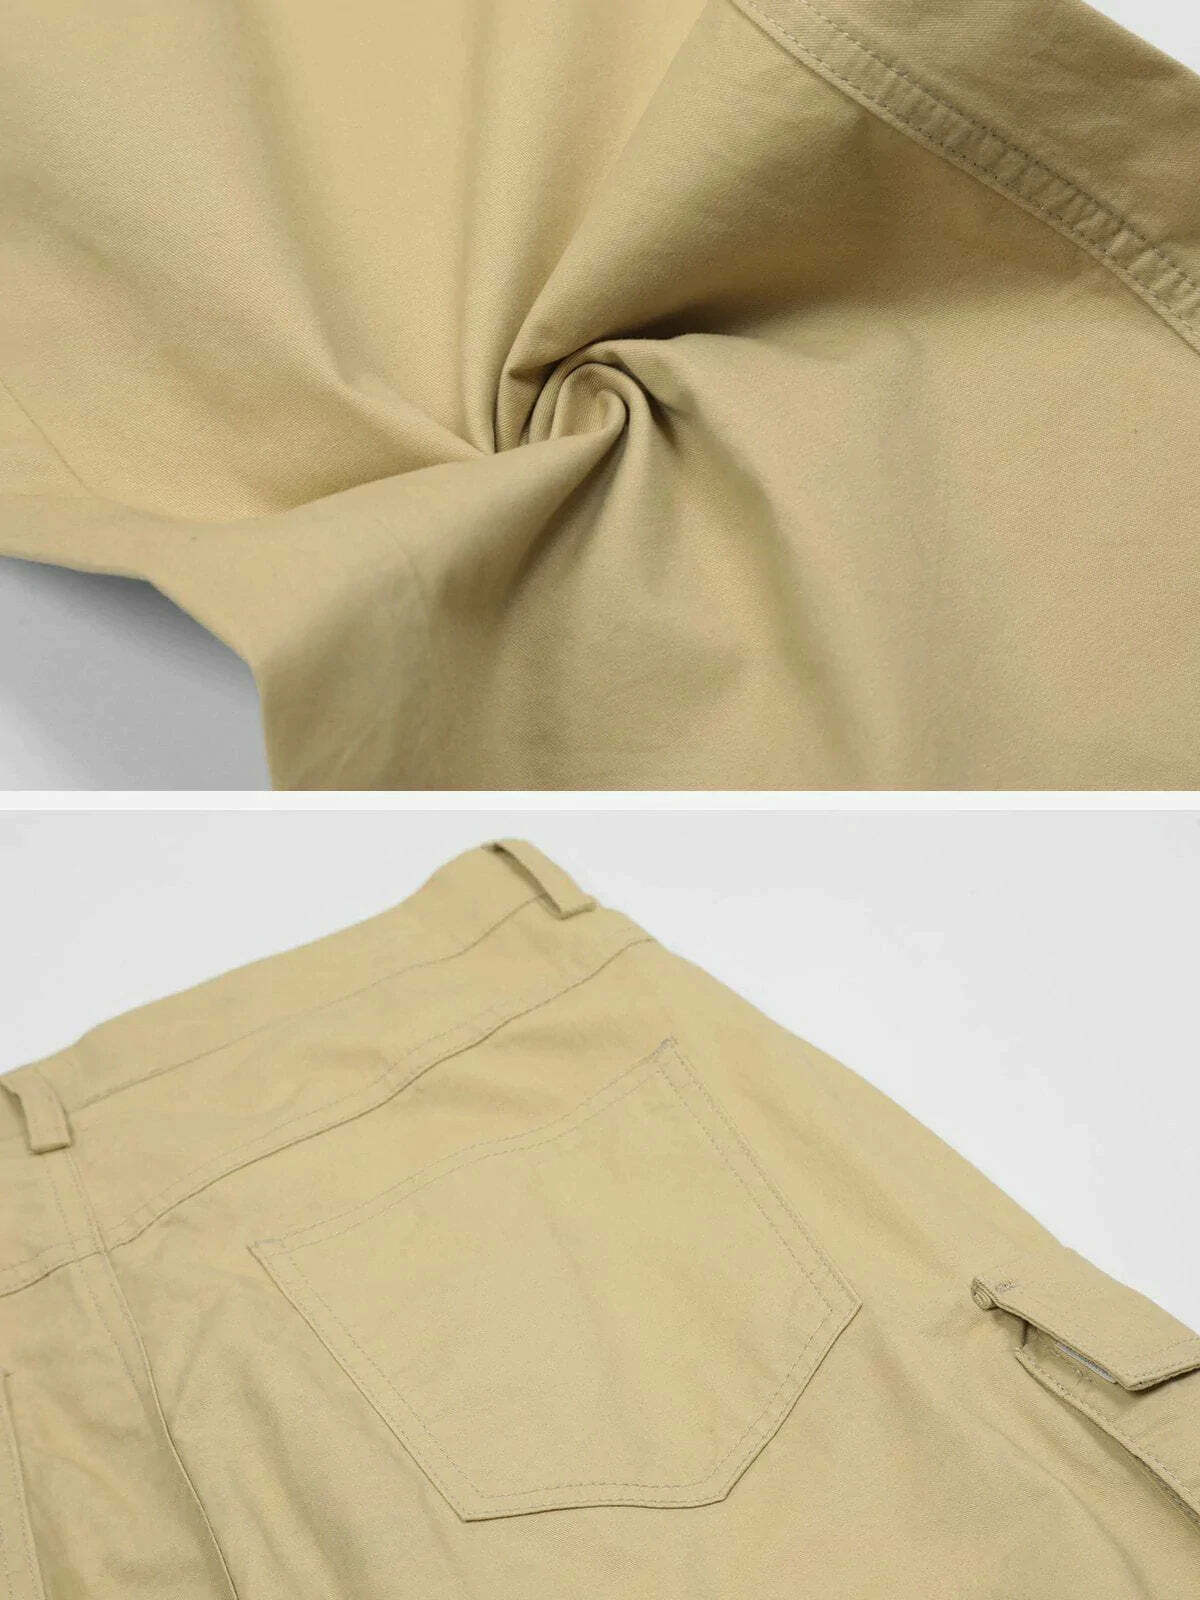 loose fit solid color pants effortlessly chic & versatile 8009